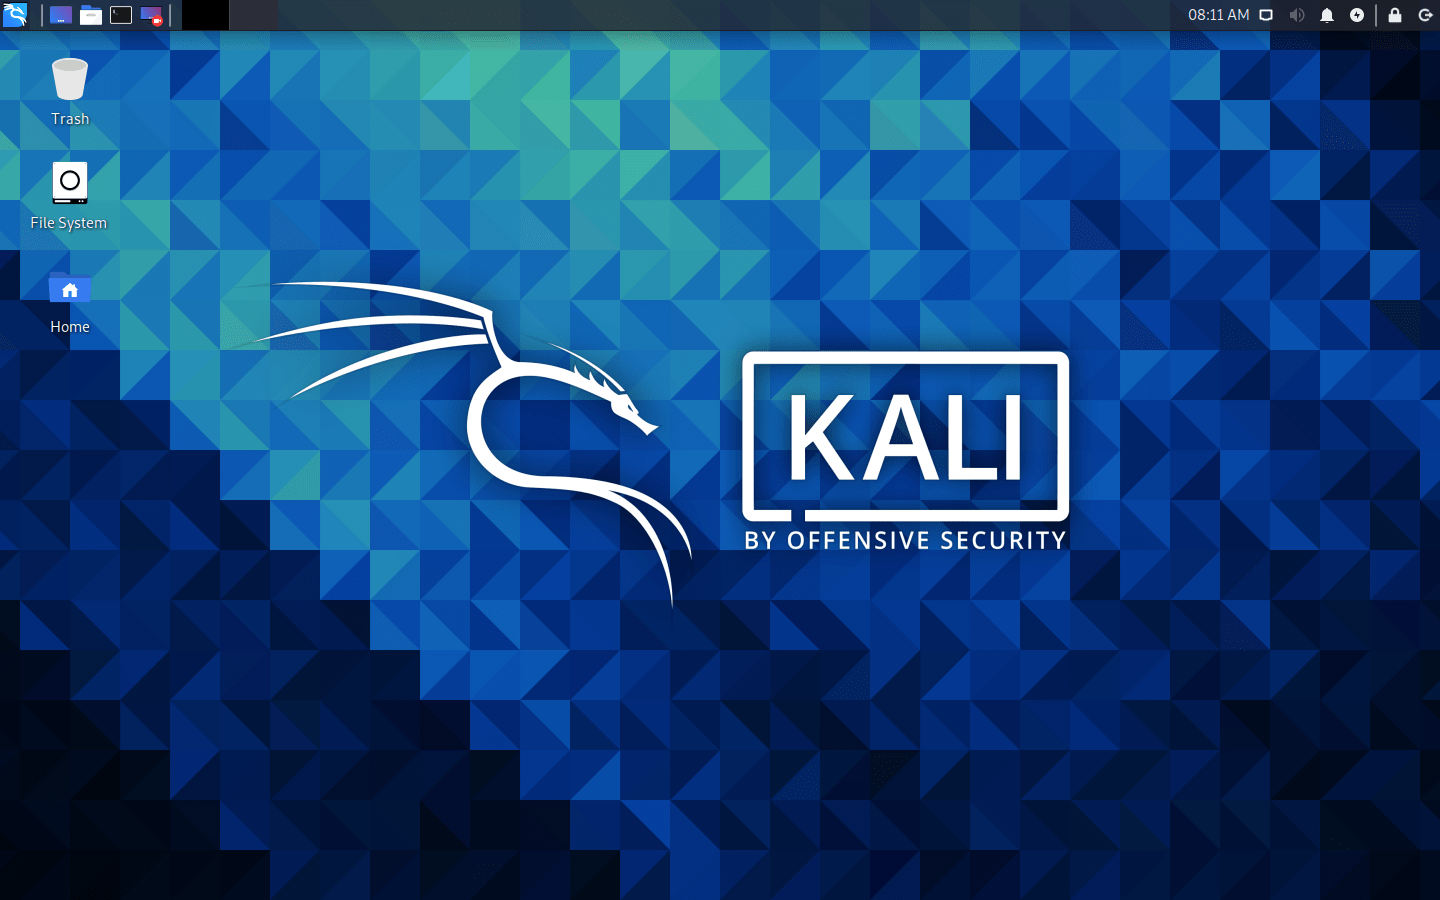 Download kali linux iso file for vmware workstation